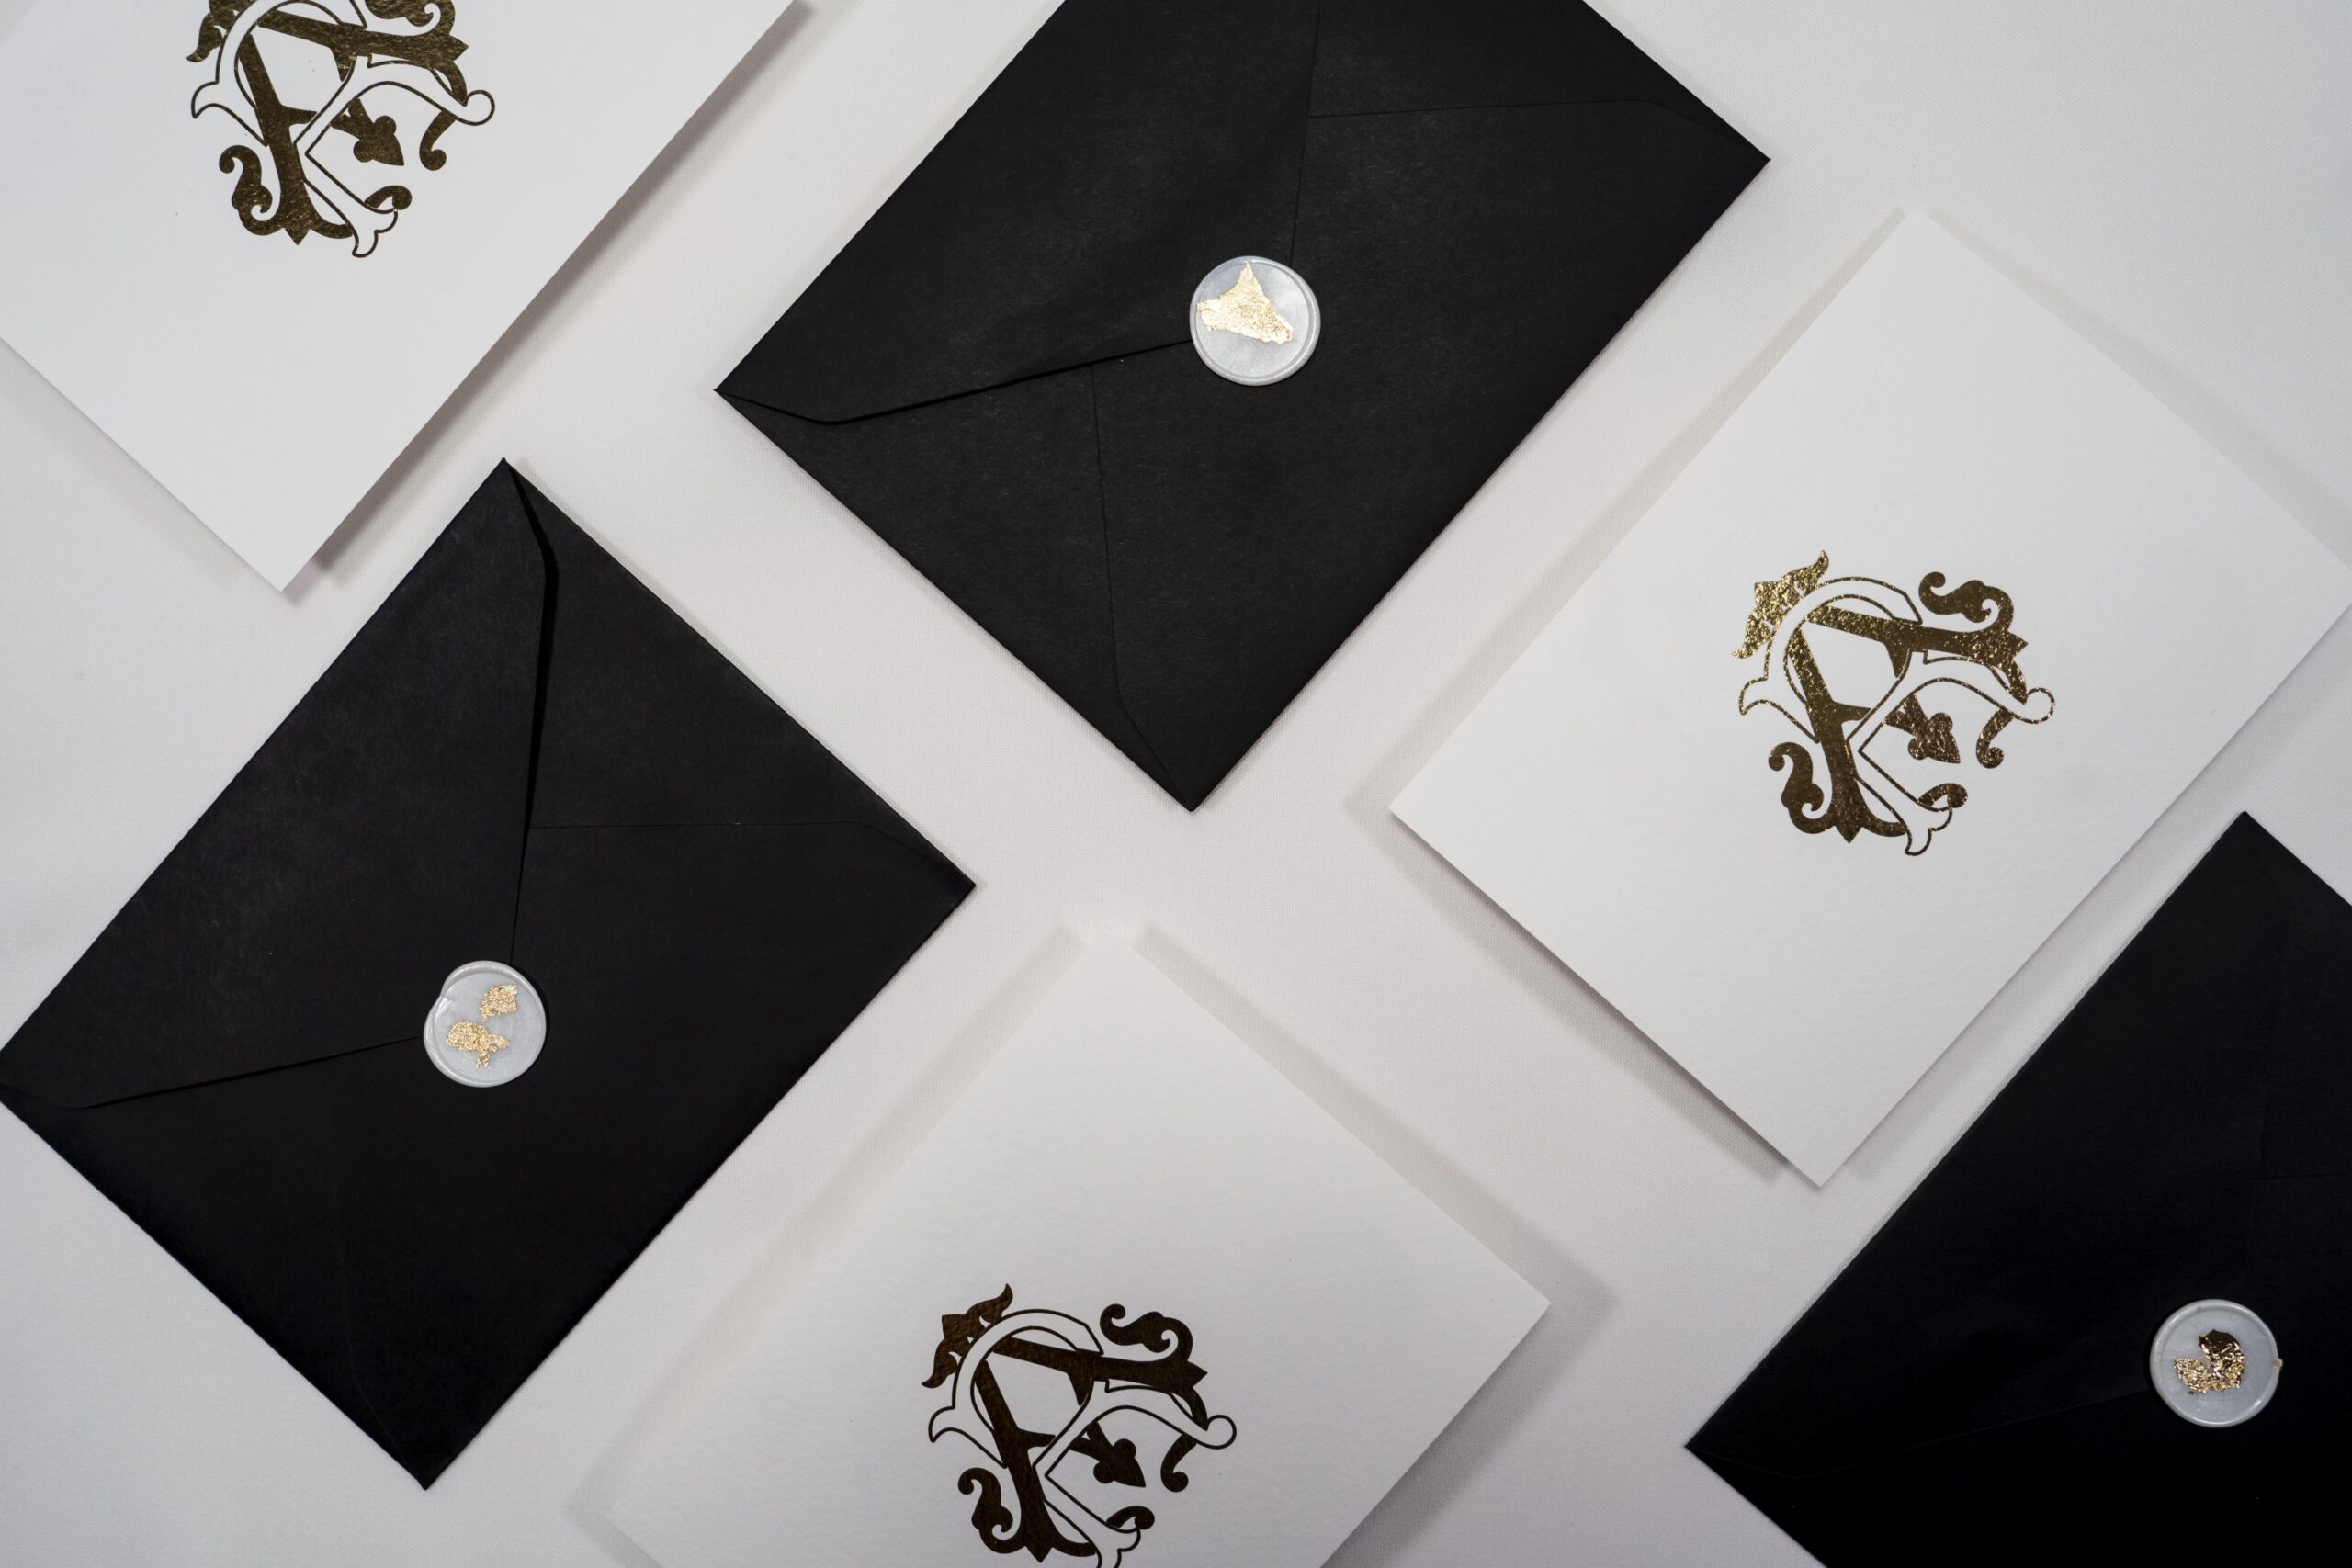 Convite de Casamento com detalhes em dourado e envelope preto com lacre branco e detalhes em dourado